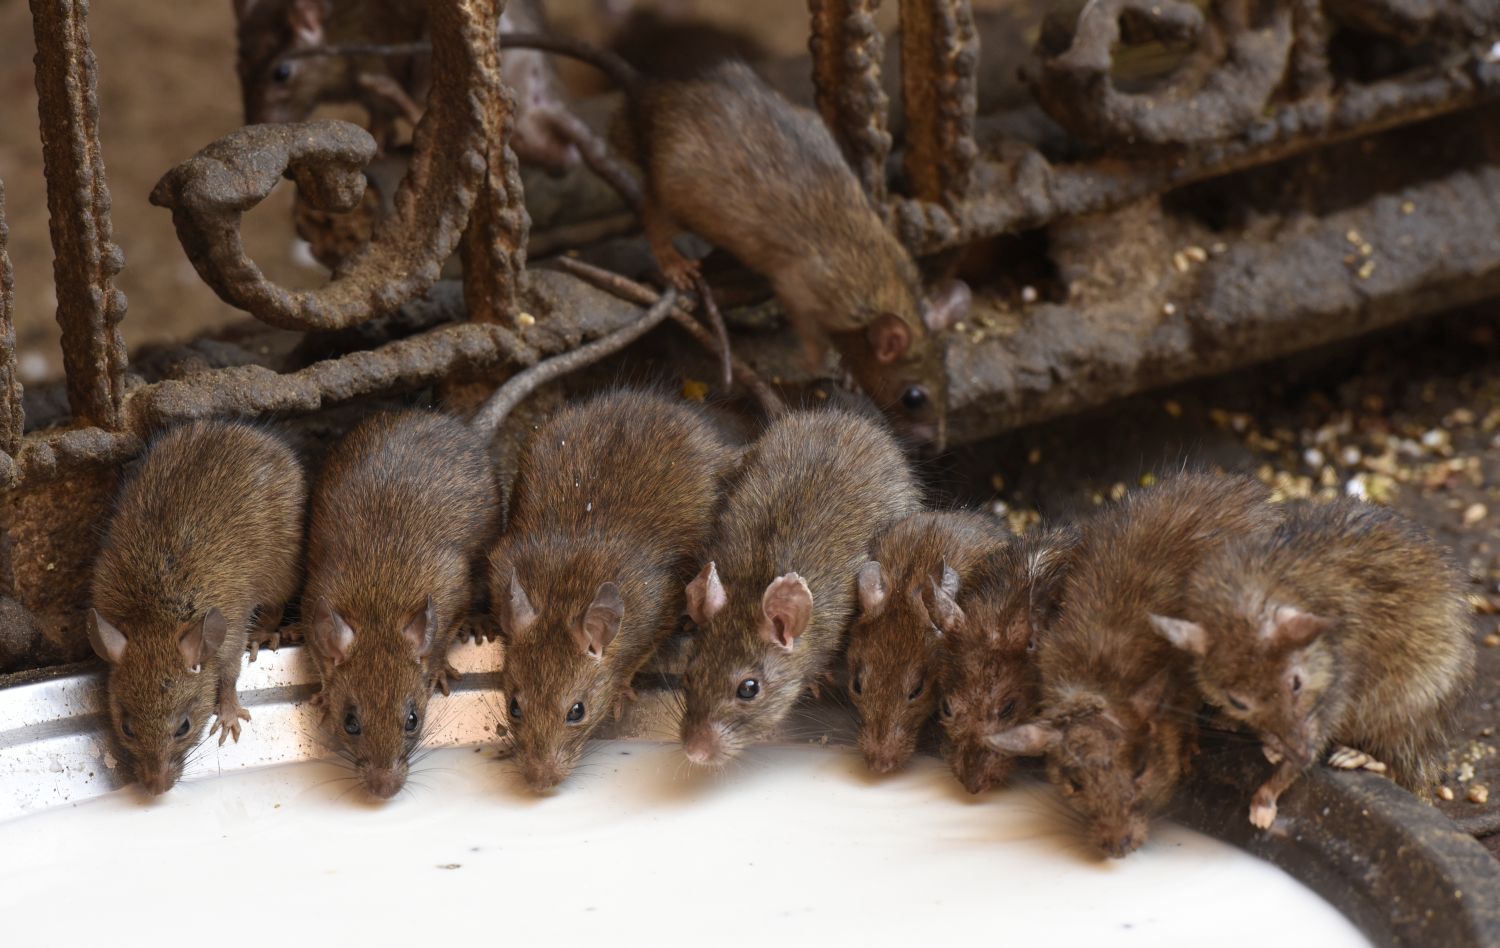 Фото мыши и крысы для сравнения